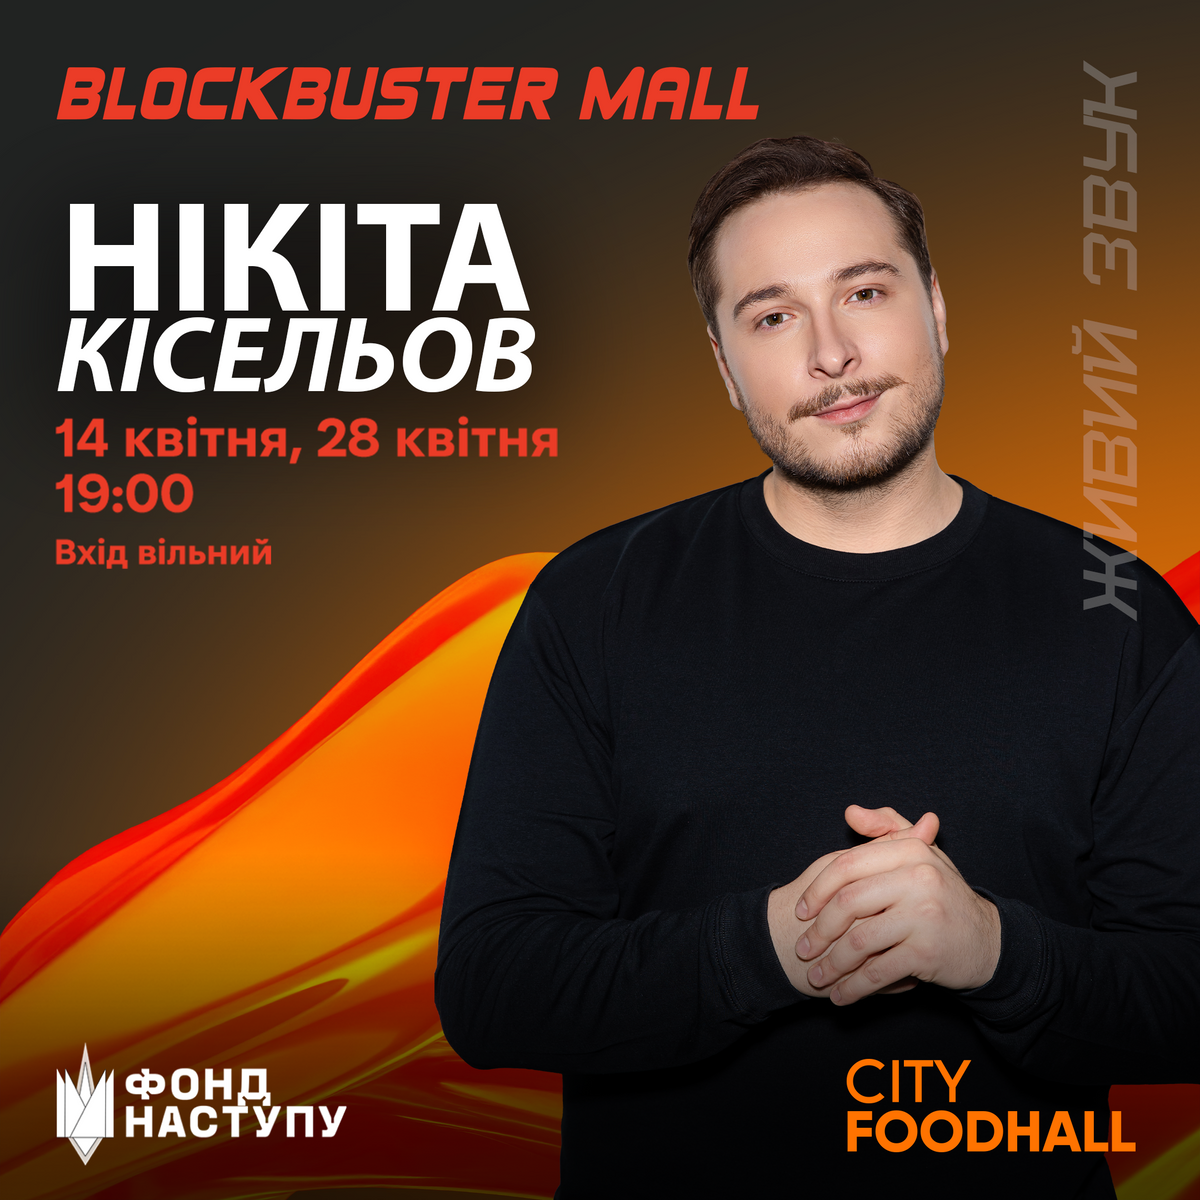 Никита Киселев в Blockbuster Mall